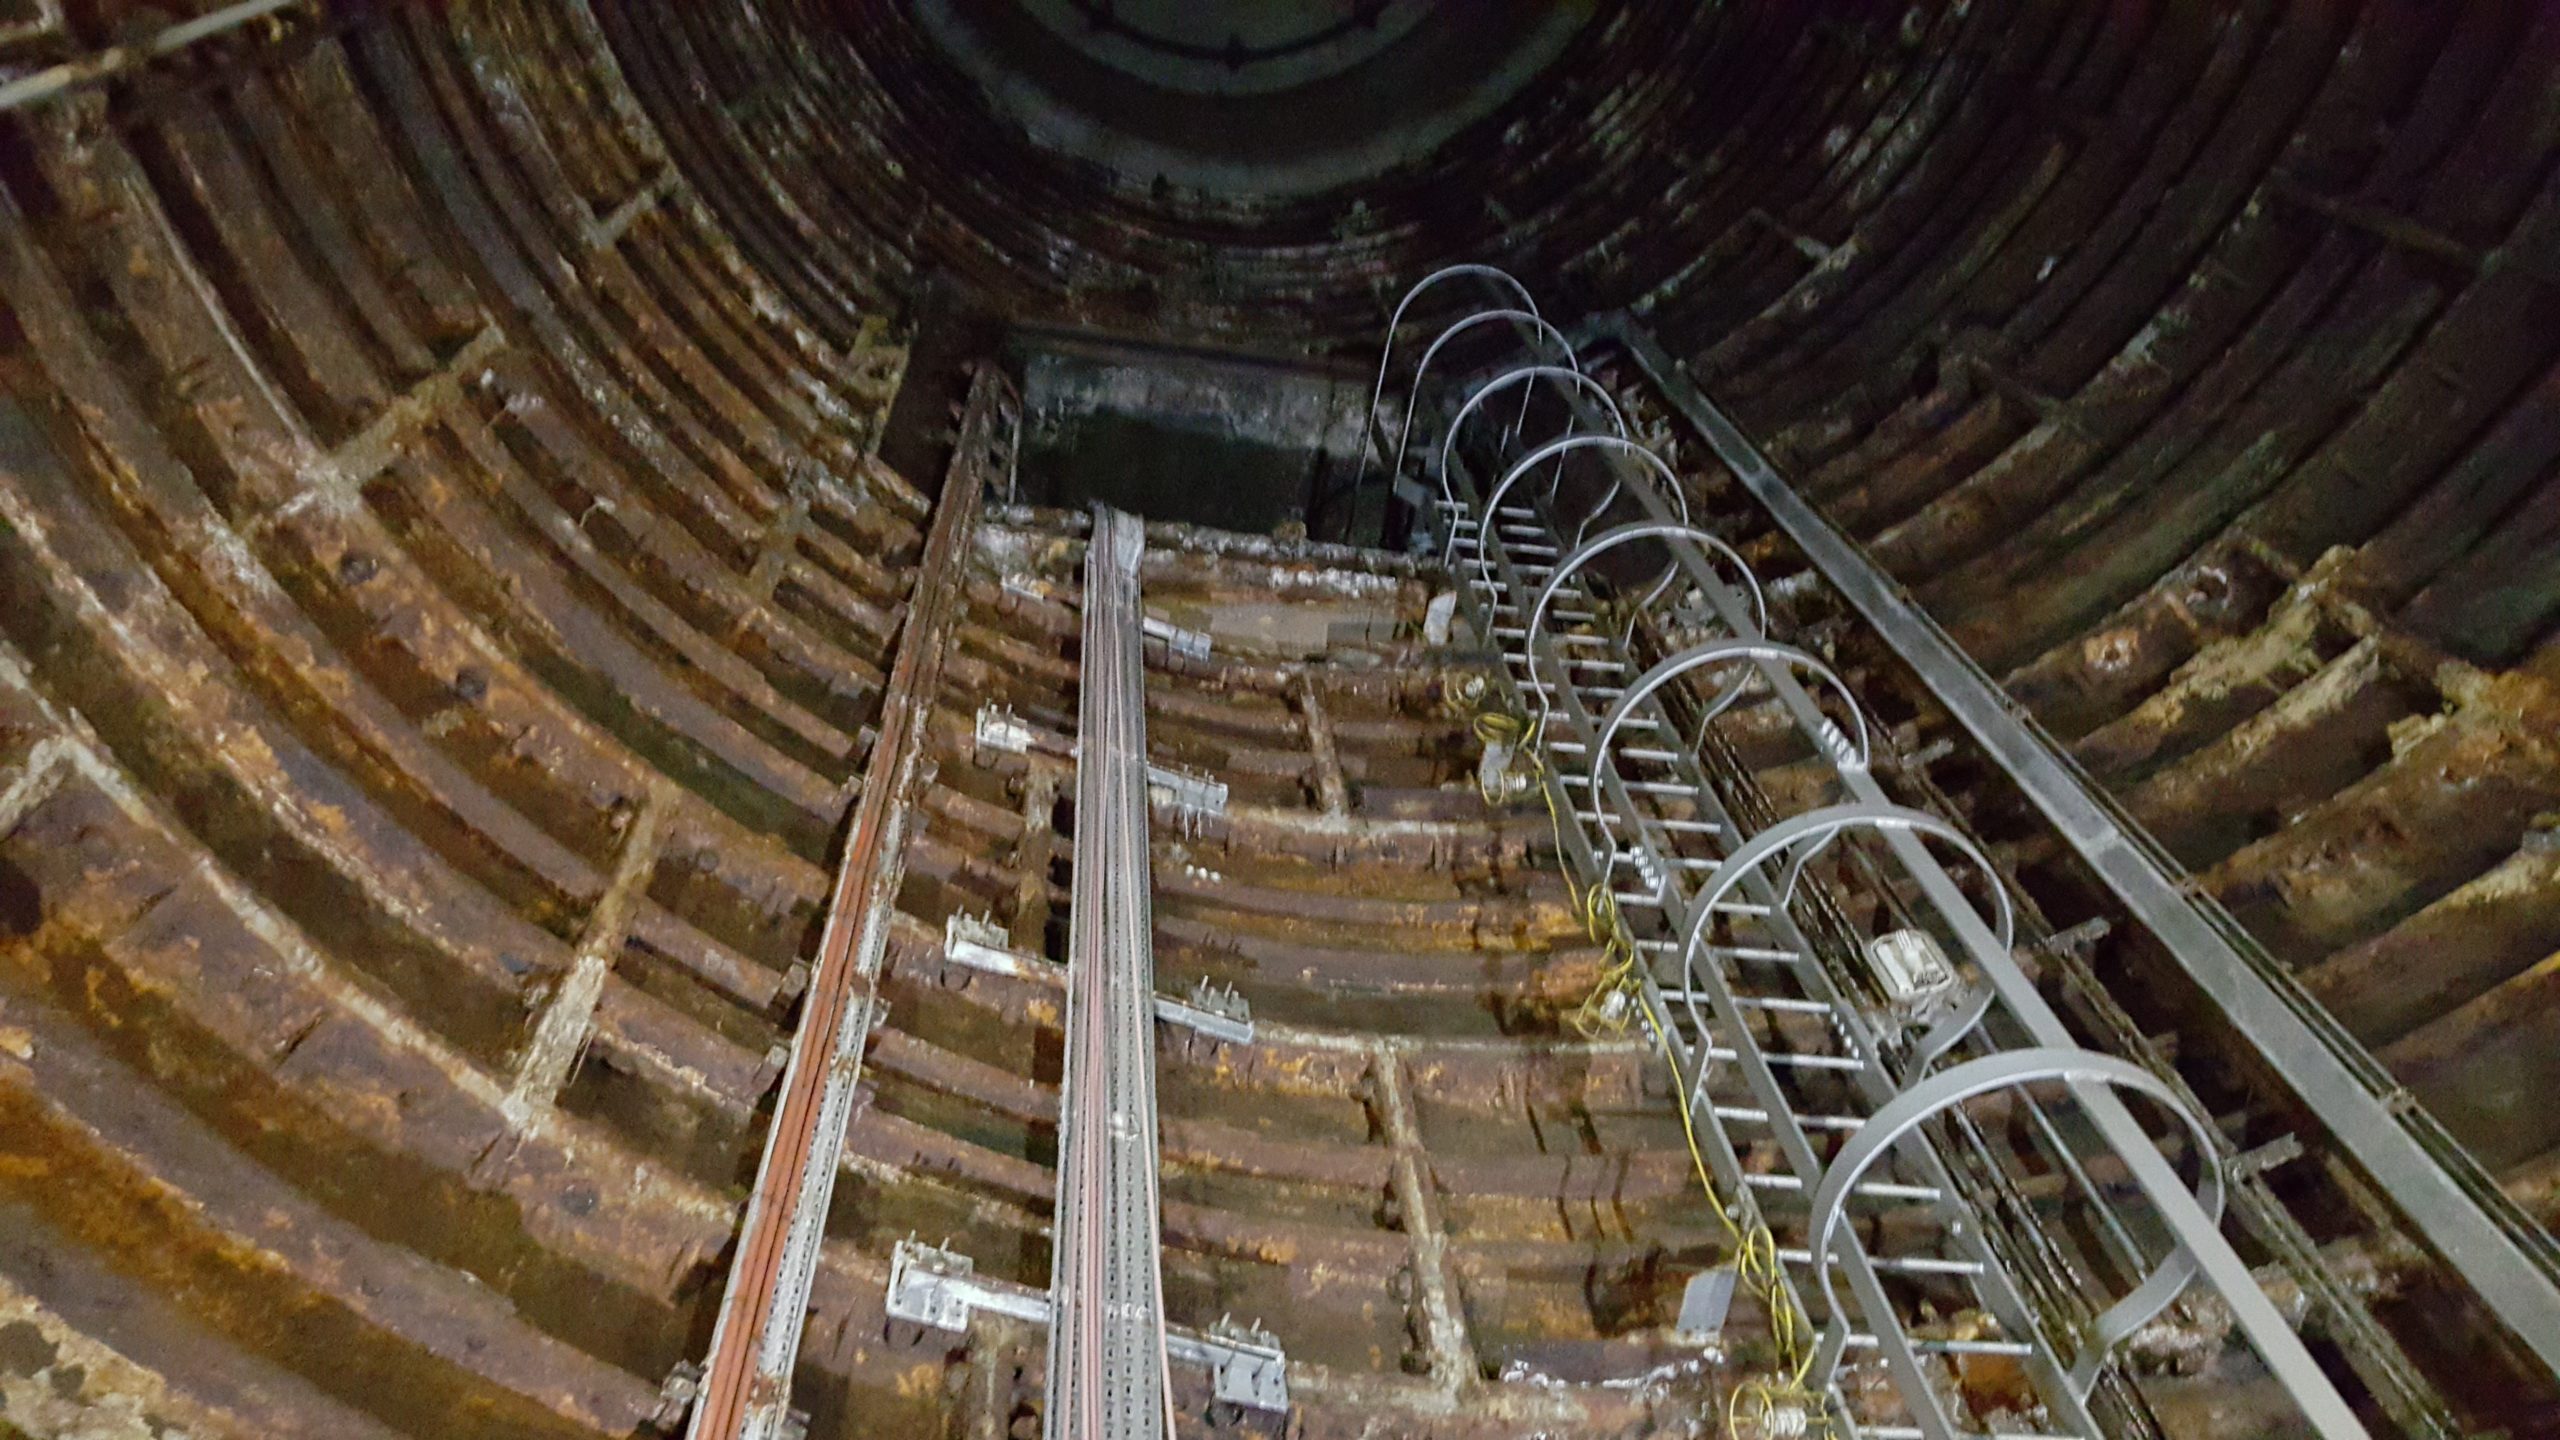 Disused lift shaft under Euston Station.